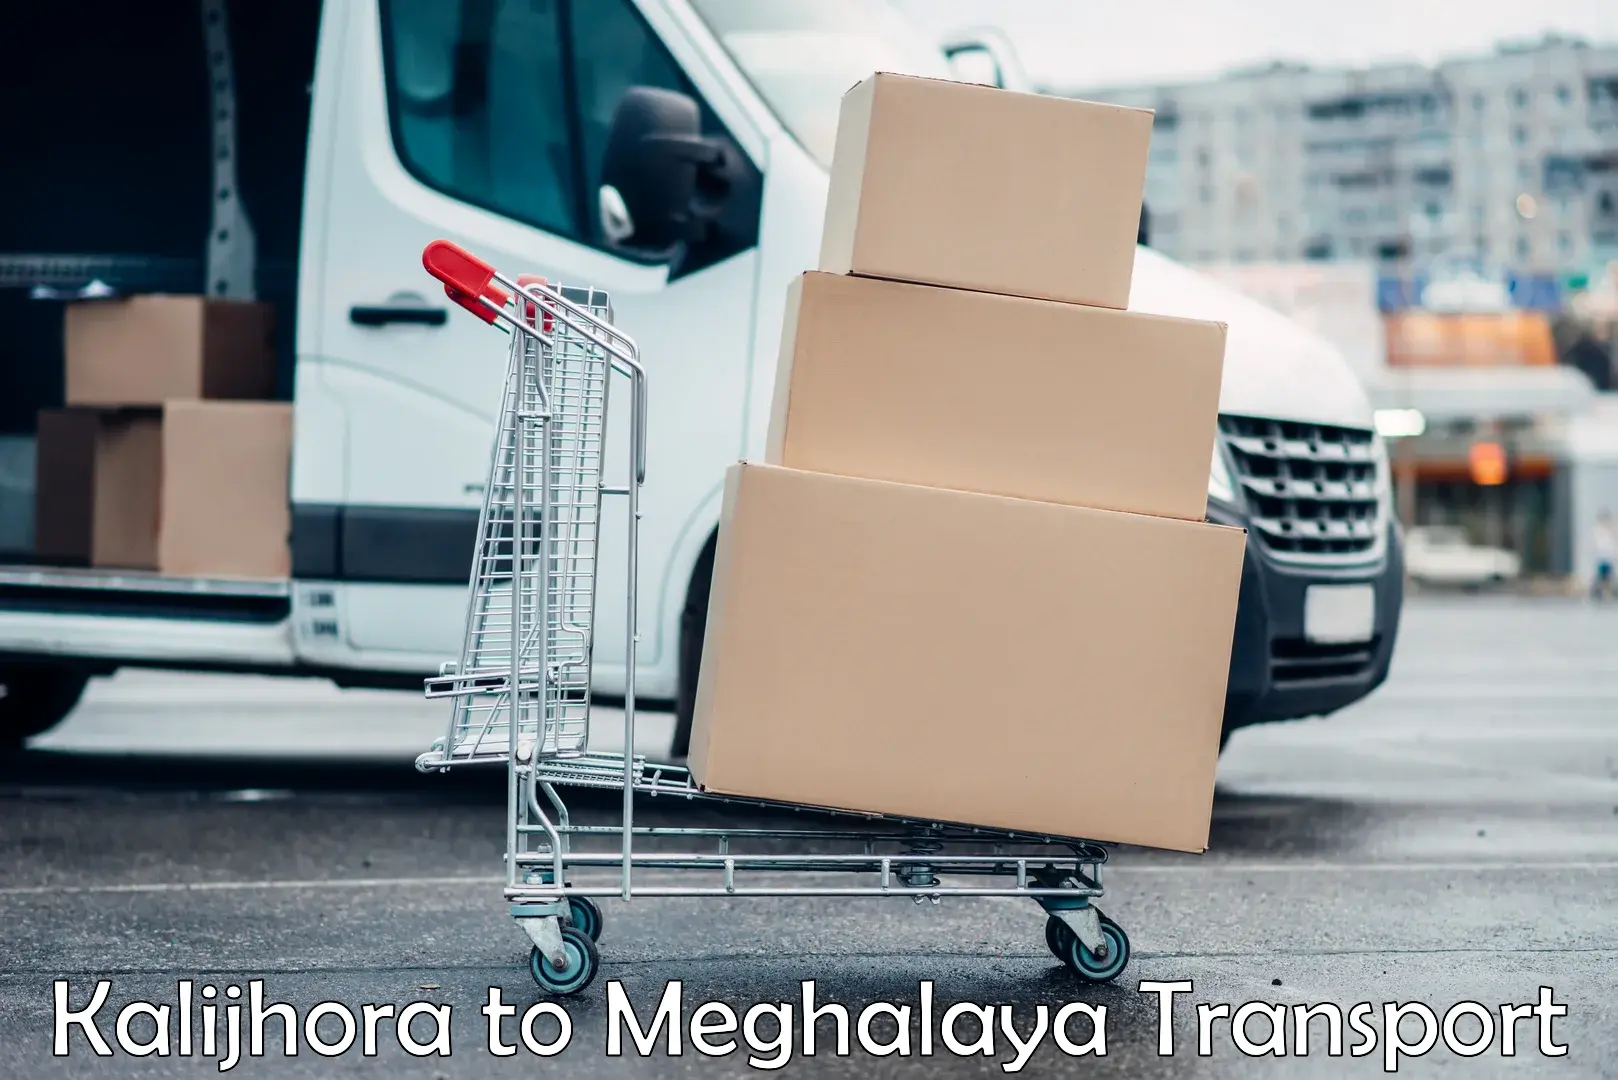 Nationwide transport services Kalijhora to Meghalaya